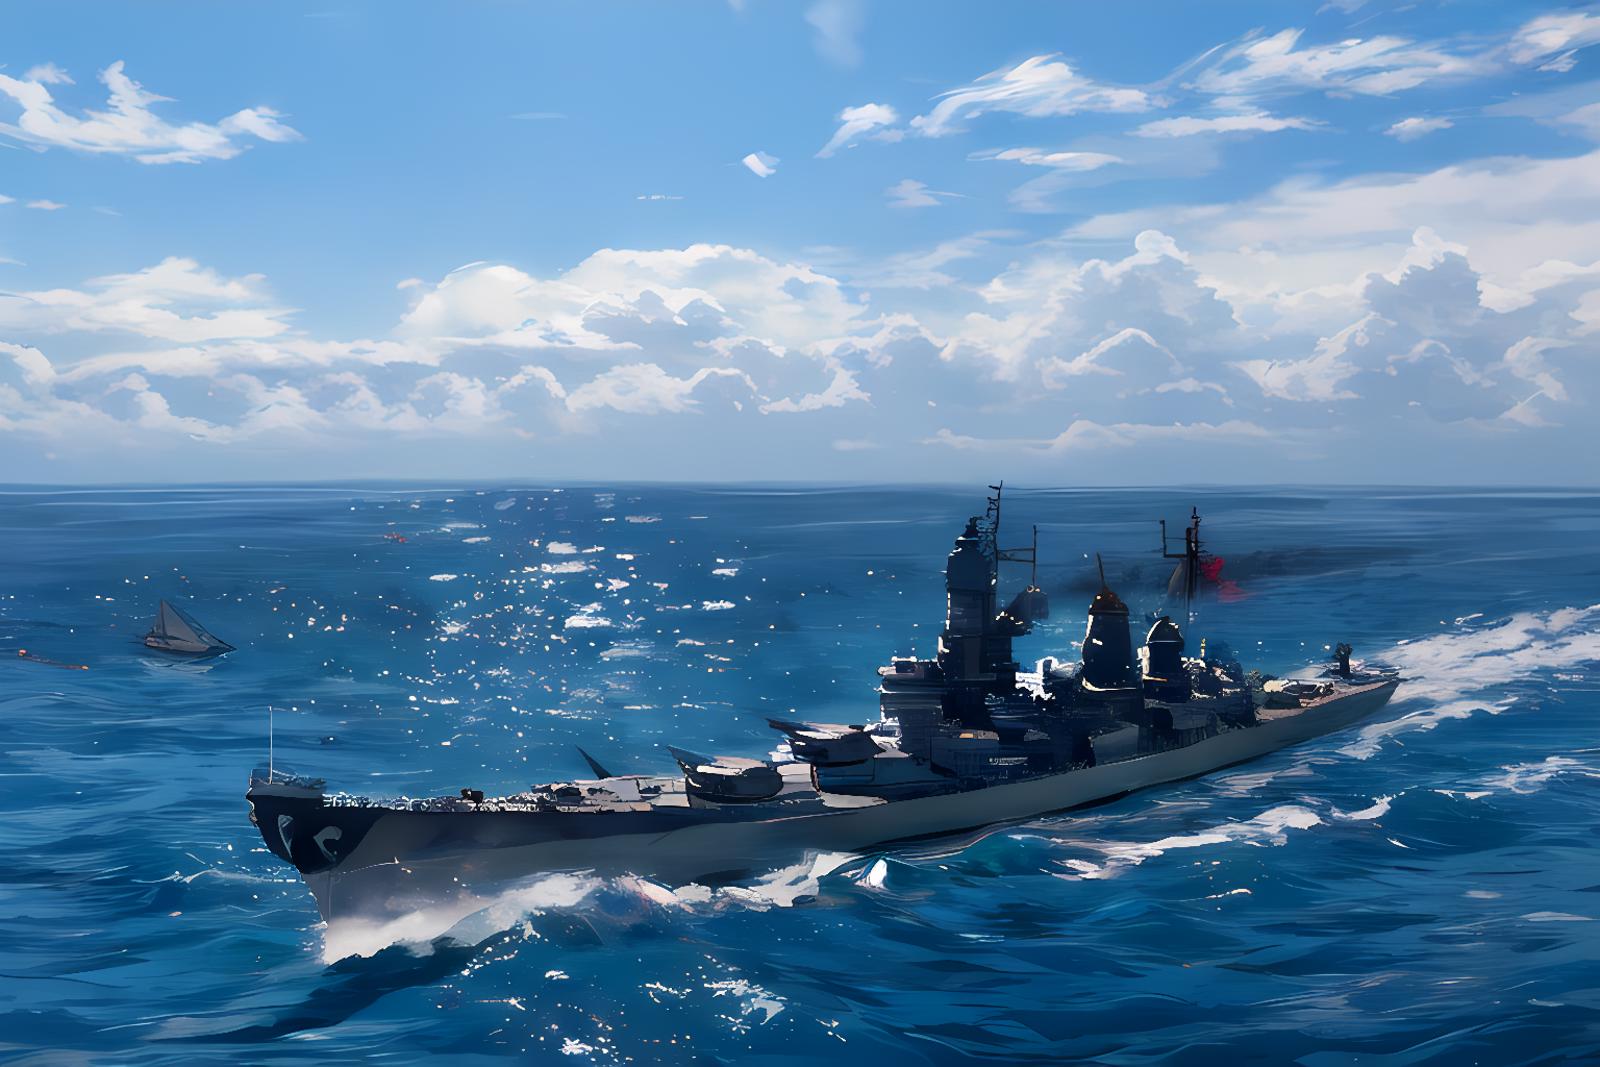 USS Iowa Battleship image by MajMorse